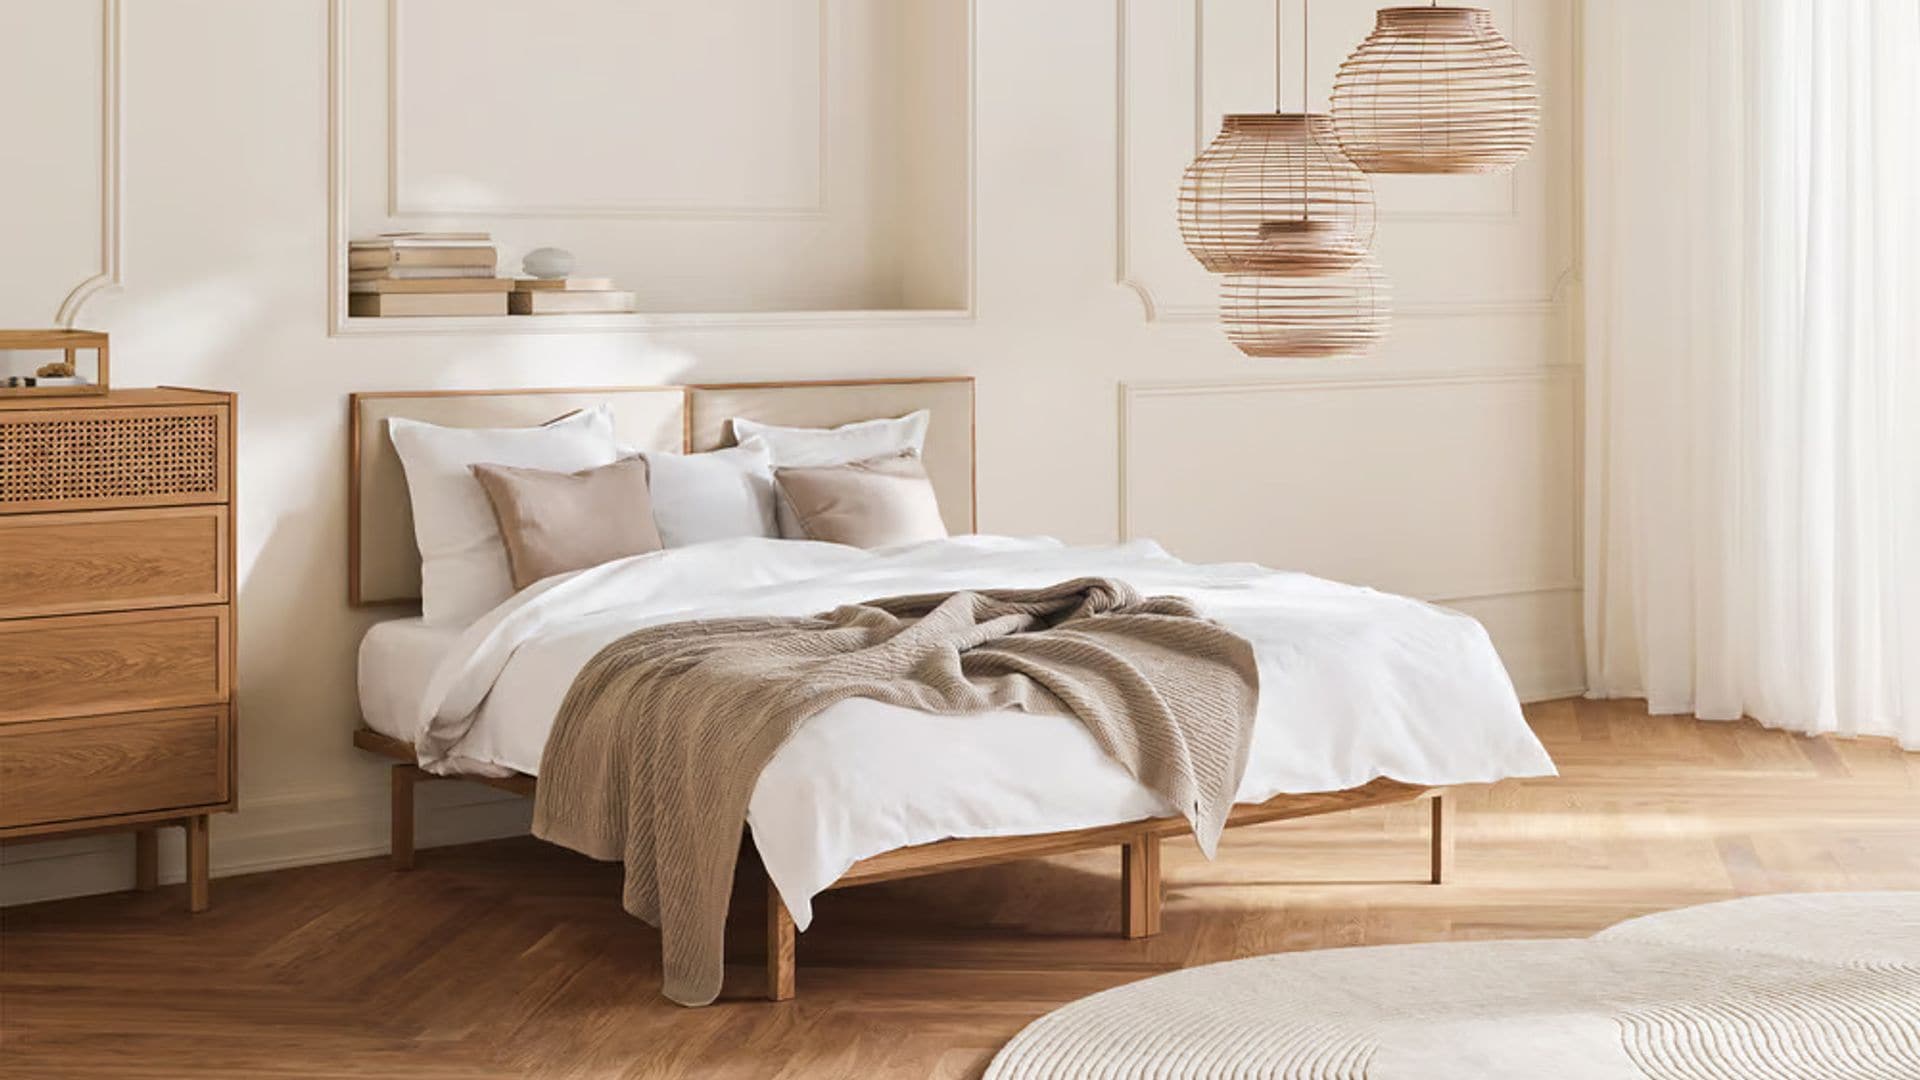 ¿Tu dormitorio está decorado en tonos neutros? Así puedes convertirlo en un espacio más cálido y acogedor